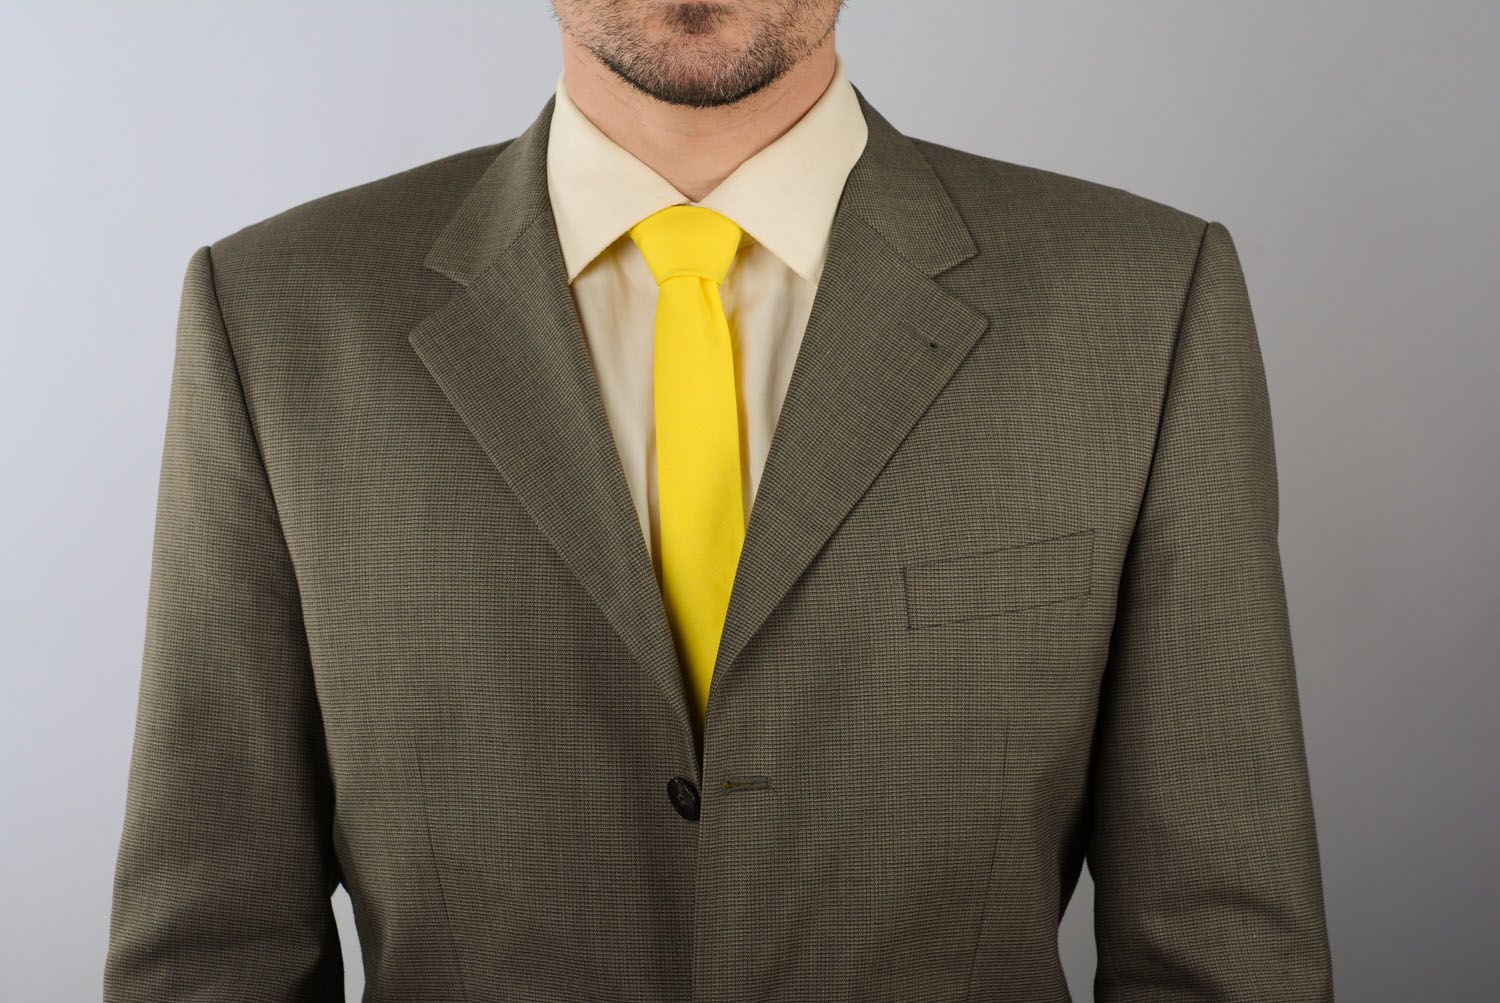 Cravate en lin jaune faite main photo 4